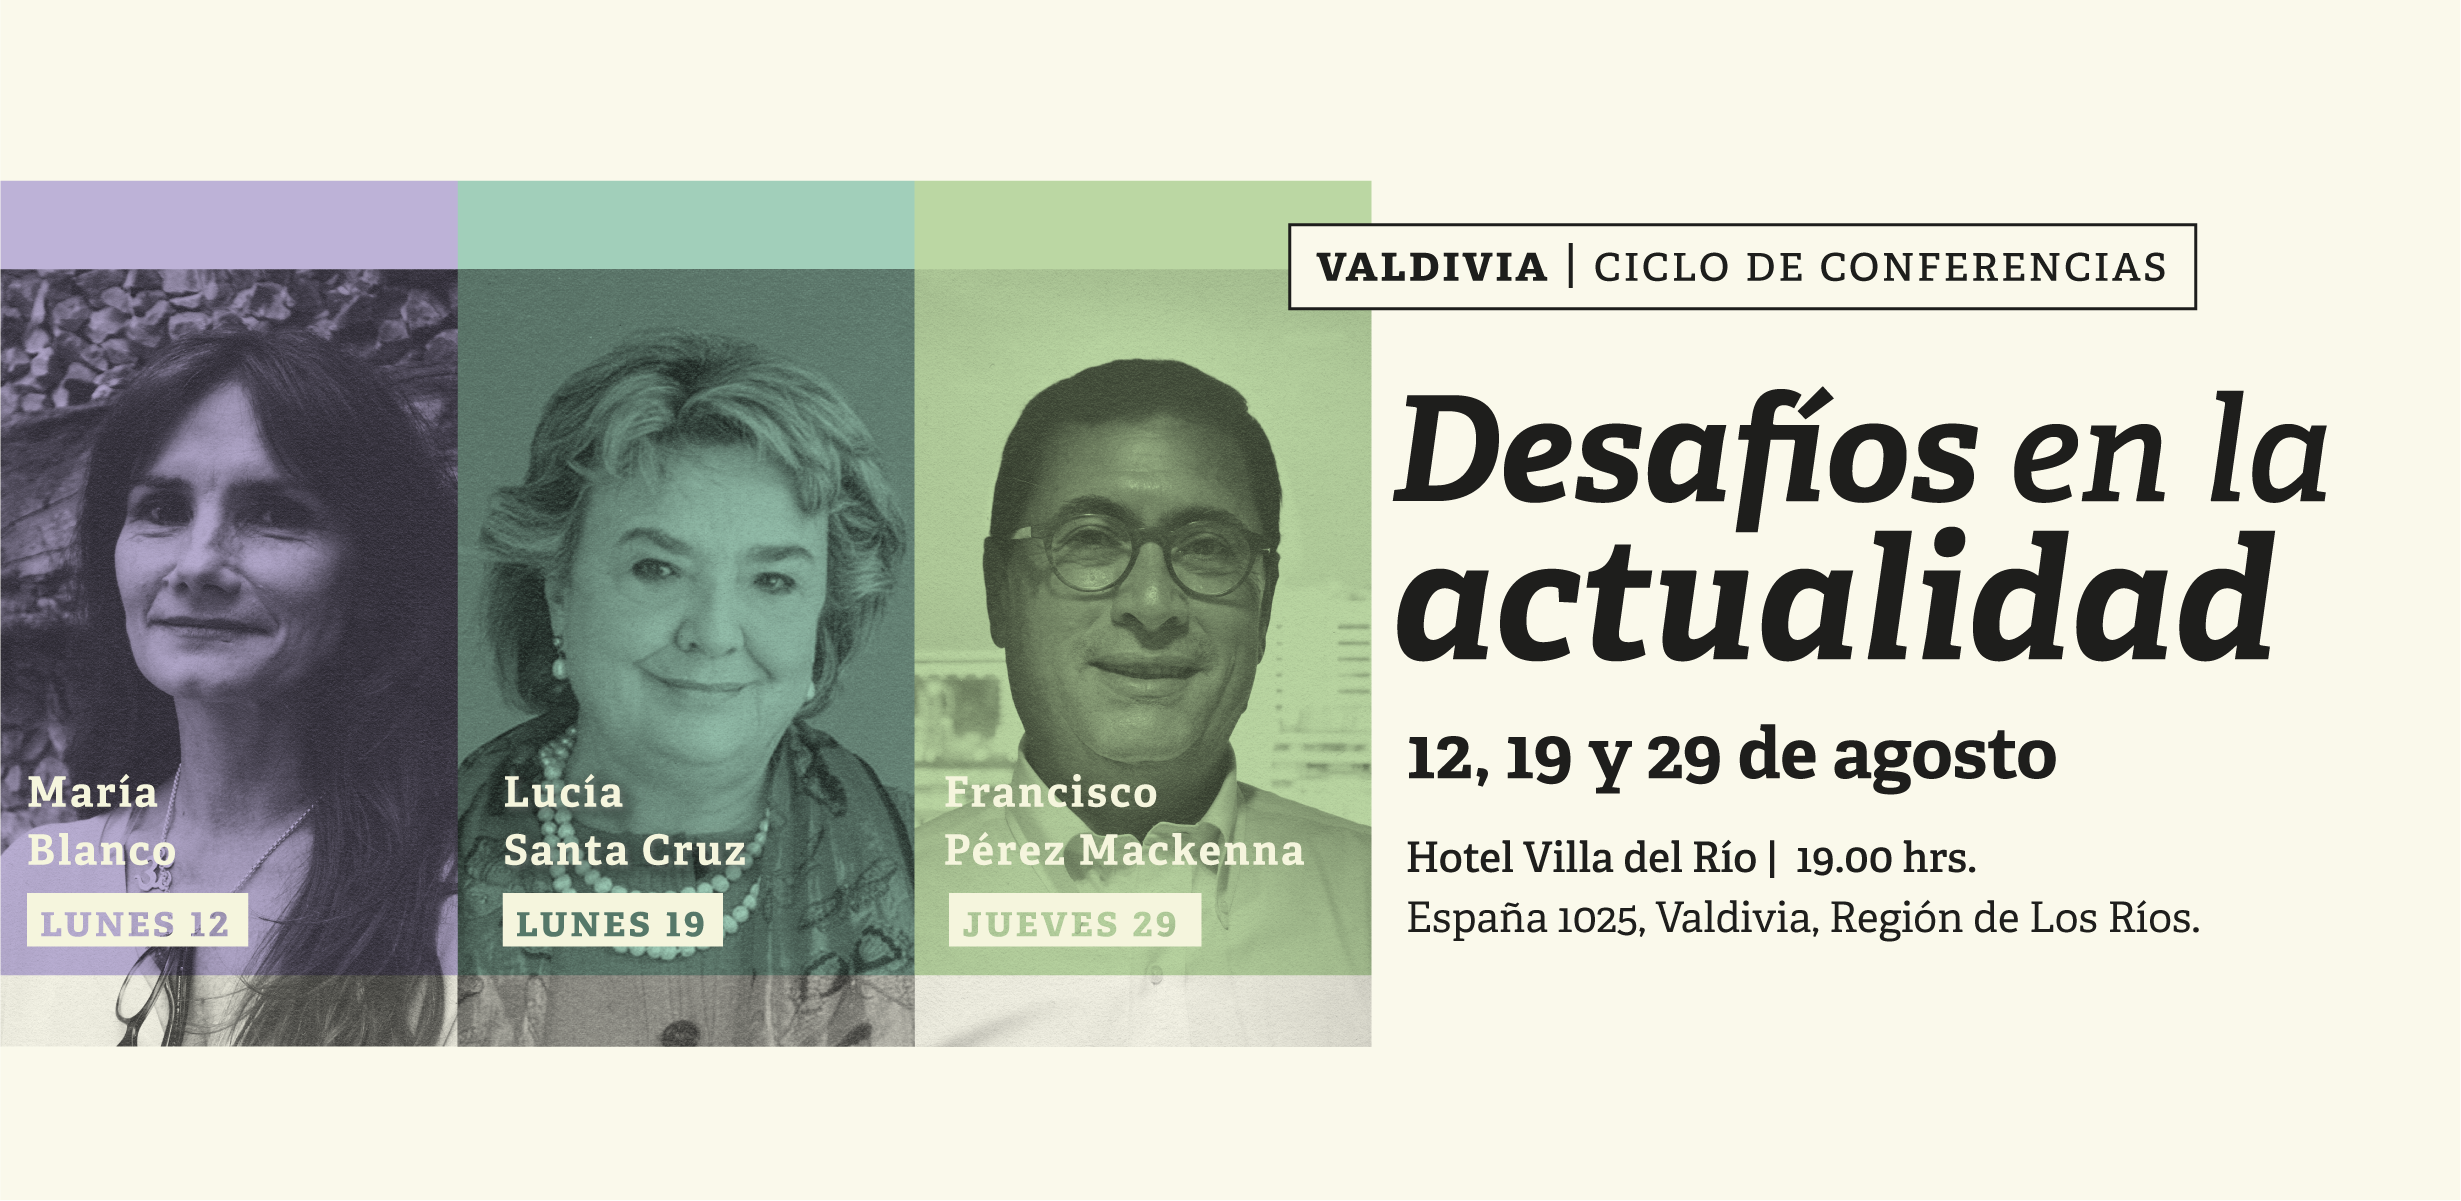 Valdivia: Desafíos en la actualidad